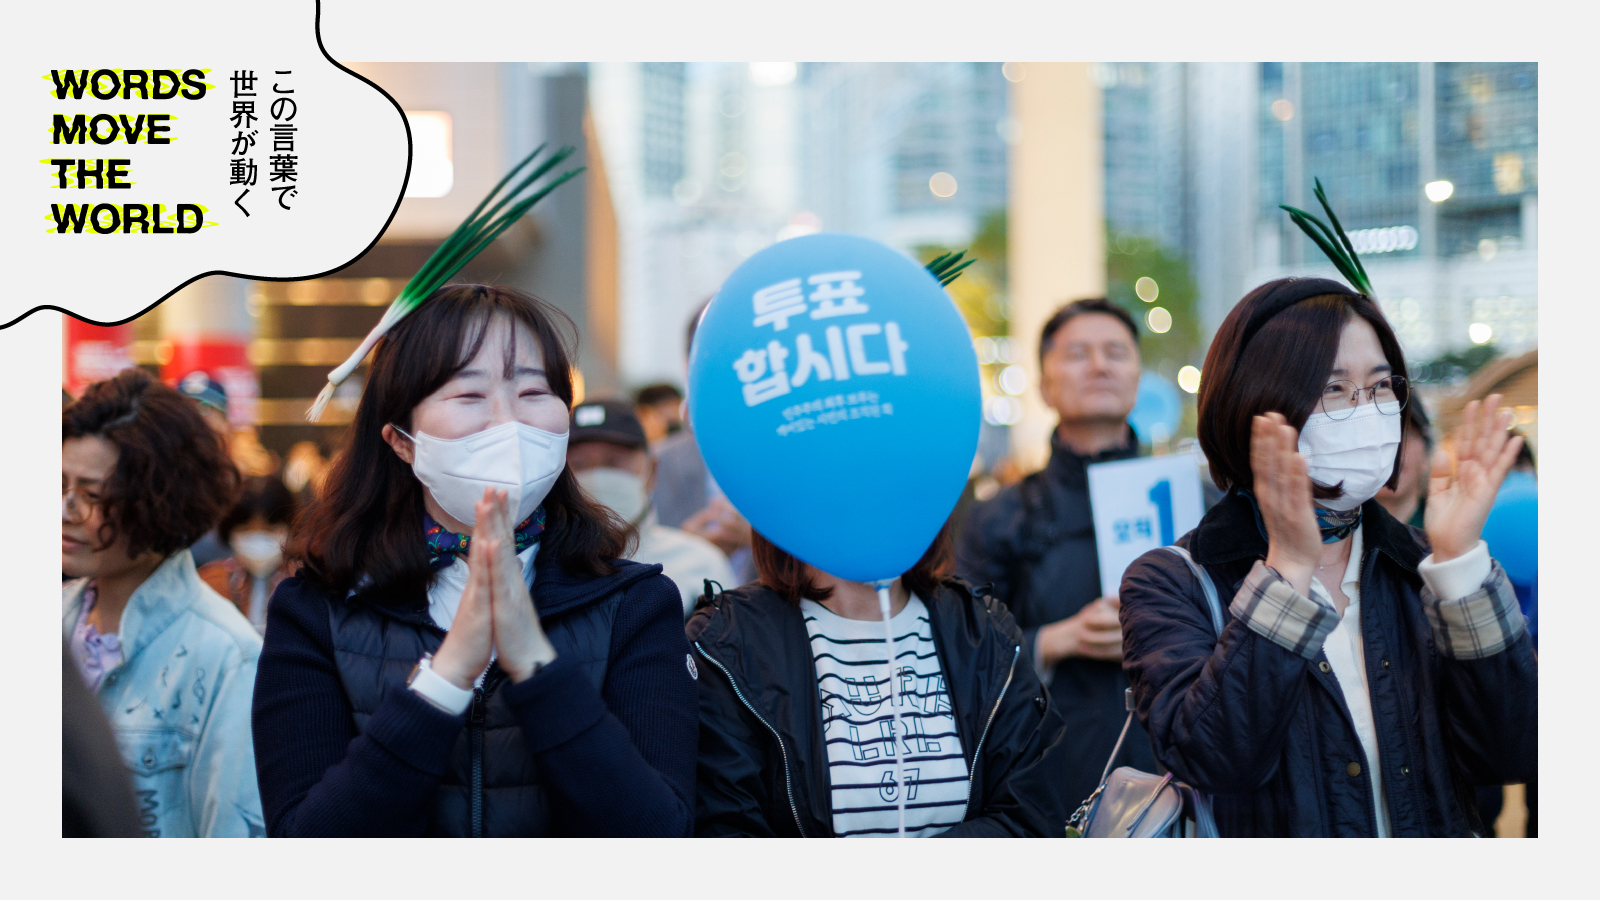 韓国総選挙の勝敗を分けた「대파（長ネギ）」と尹大統領の「不人気ぶり」 | Words Move the World ～この言葉で世界が動く